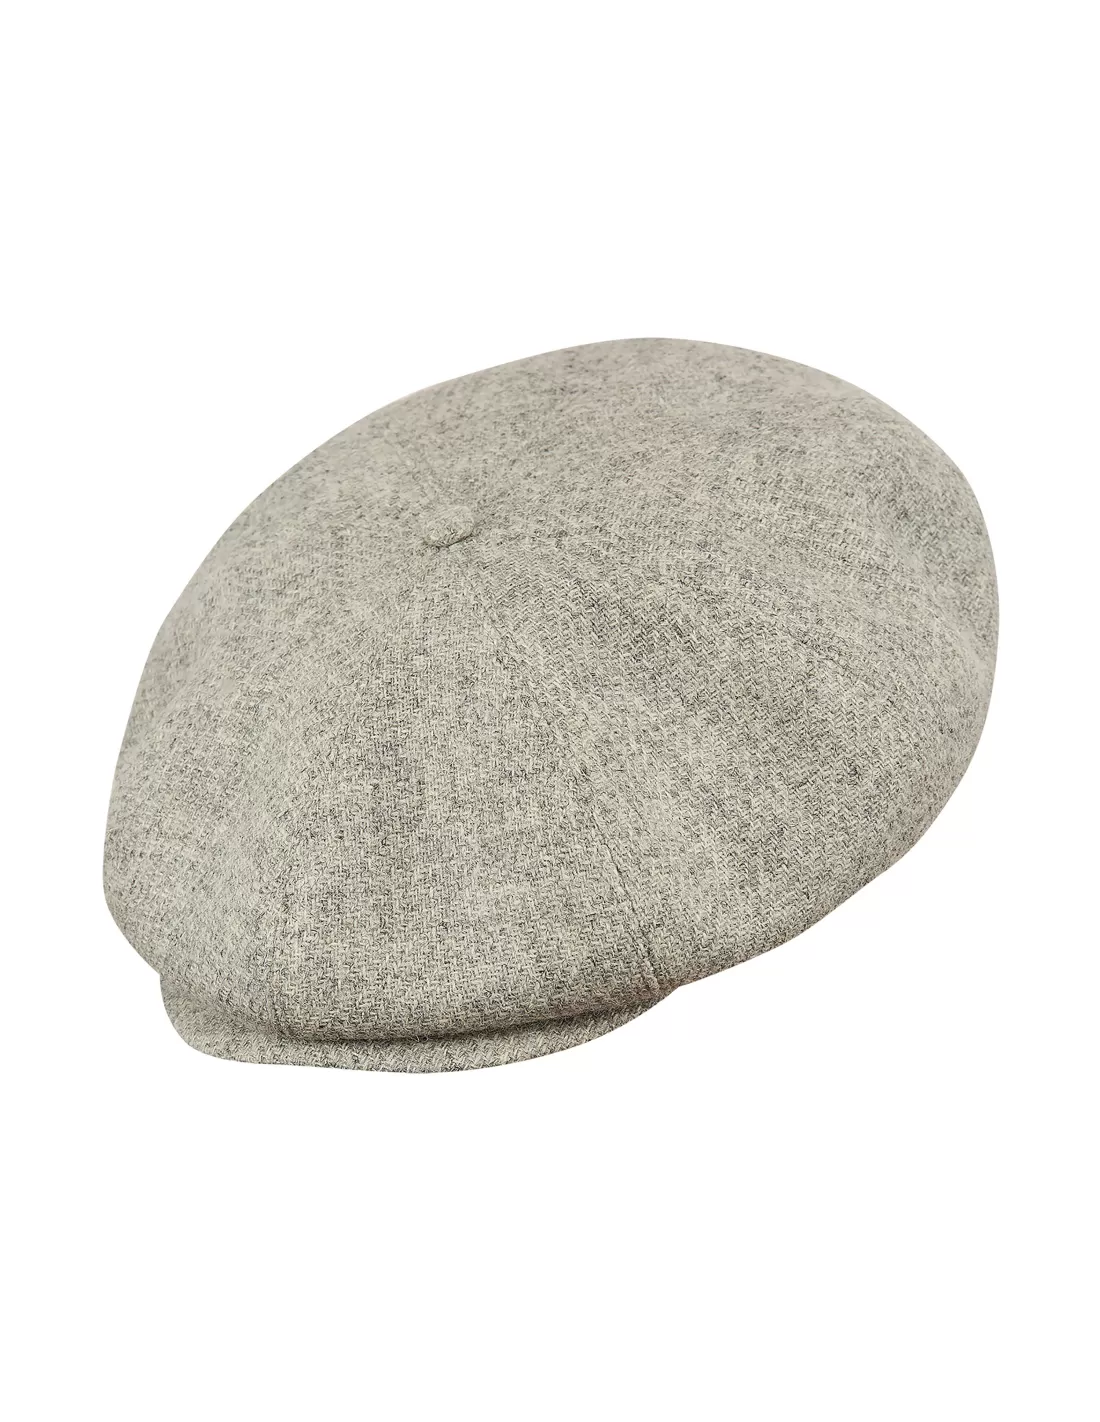 Peaky Blinders - cap made of genuine Harris Tweed with sewn down visor ...